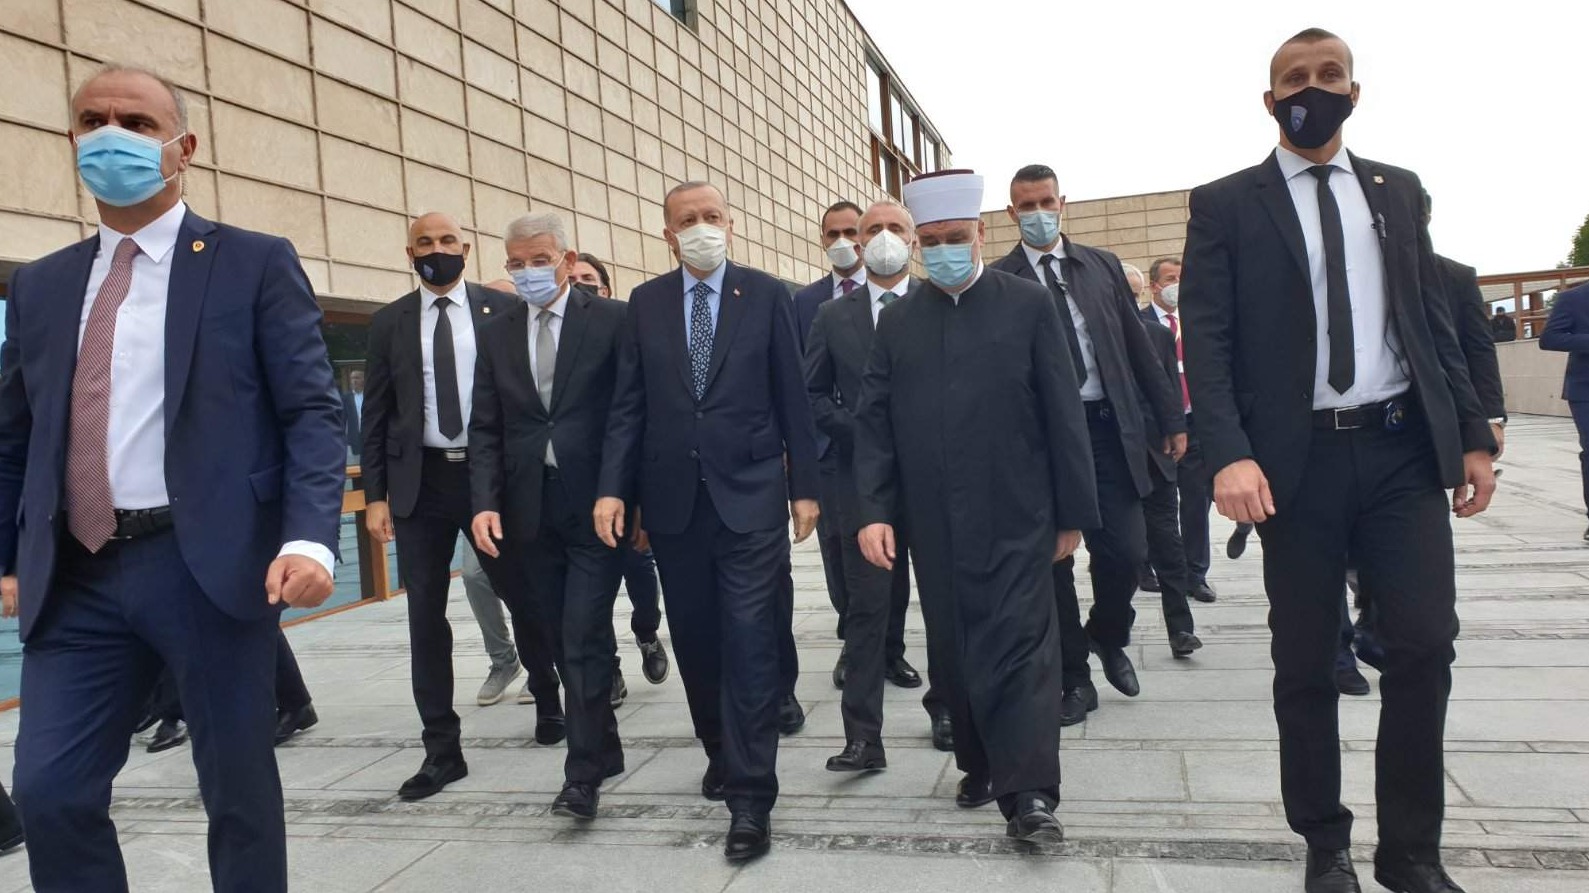 Predsjednik Erdogan i reisul-l-ulema Kavazović obišli Upravnu zgradu Rijaseta na Kovačima